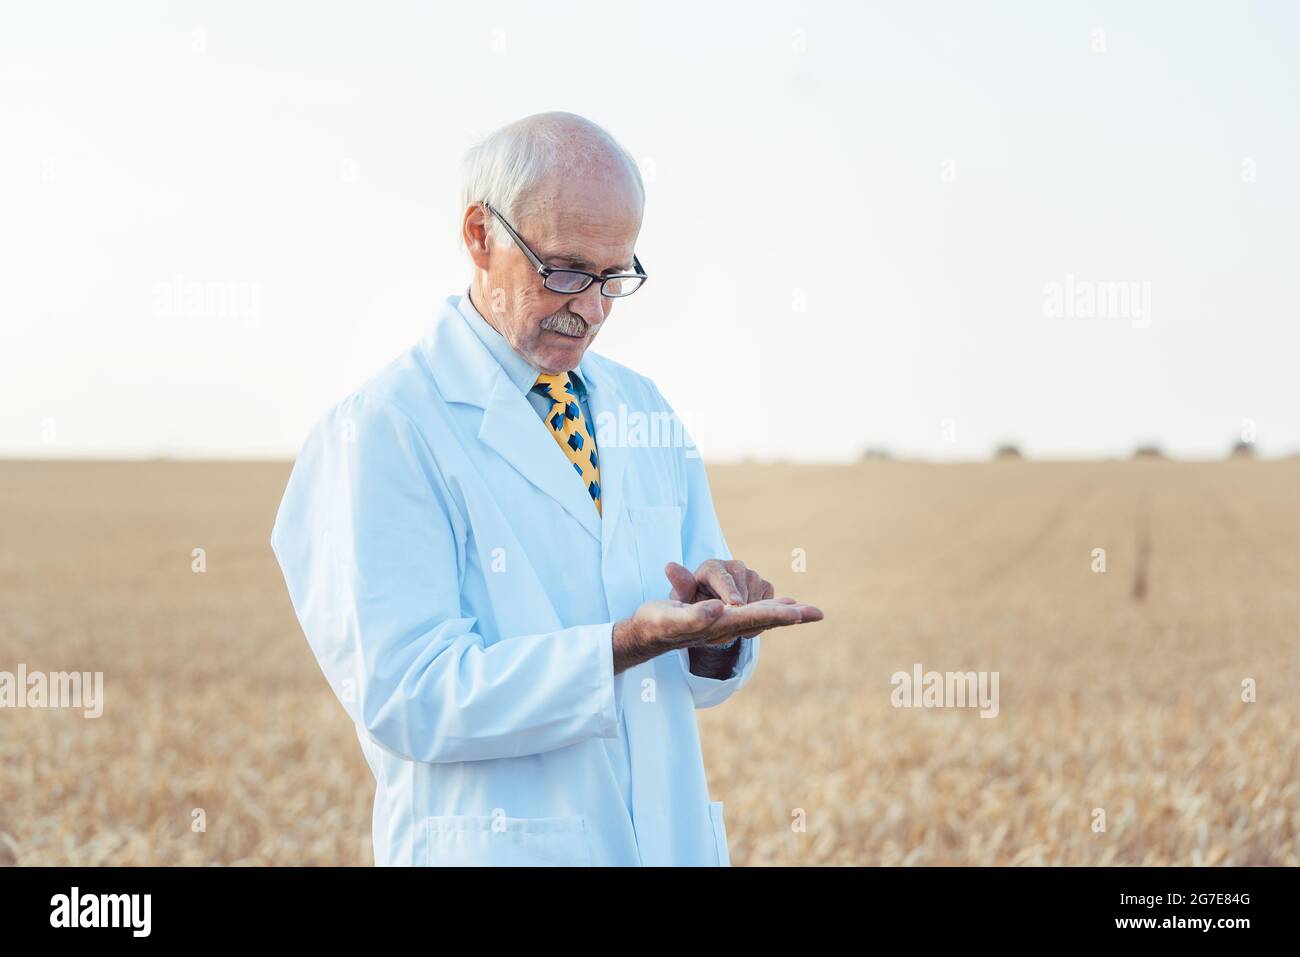 Científico agrícola buscando calidad de semillas nuevas en el campo de grano Foto de stock